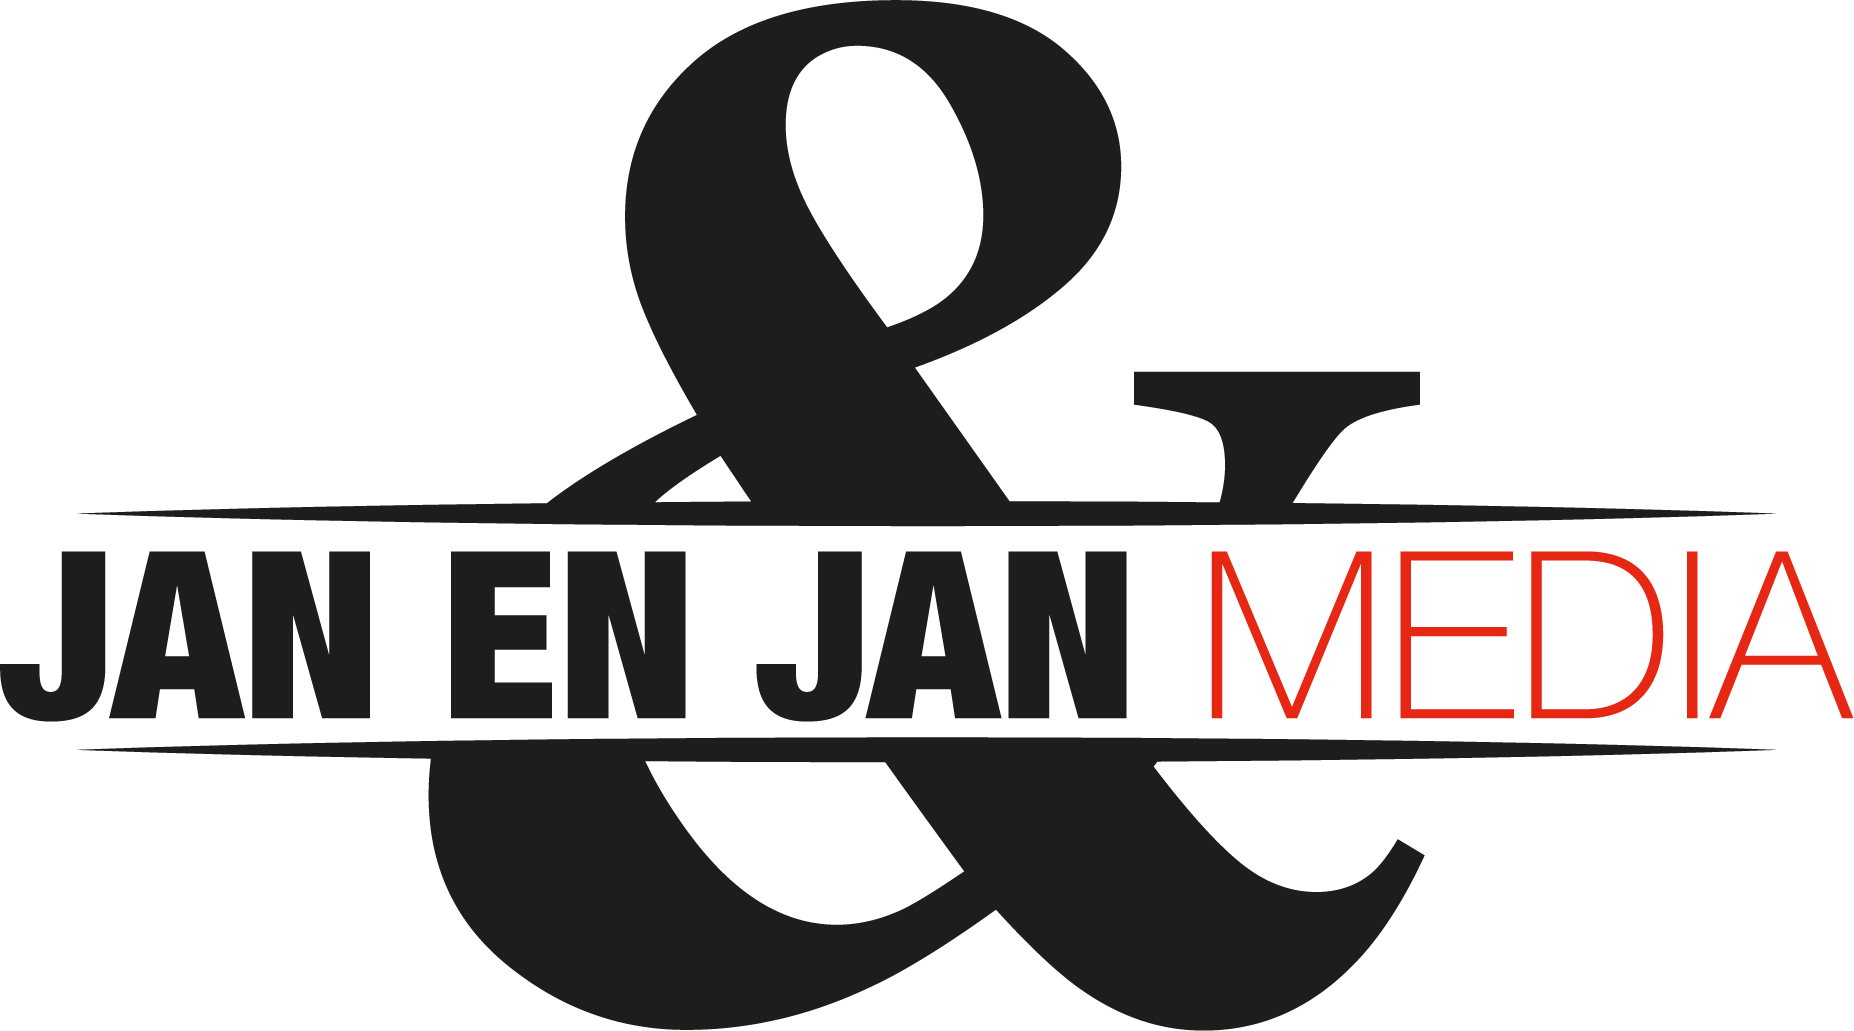 Jan en Jan Media